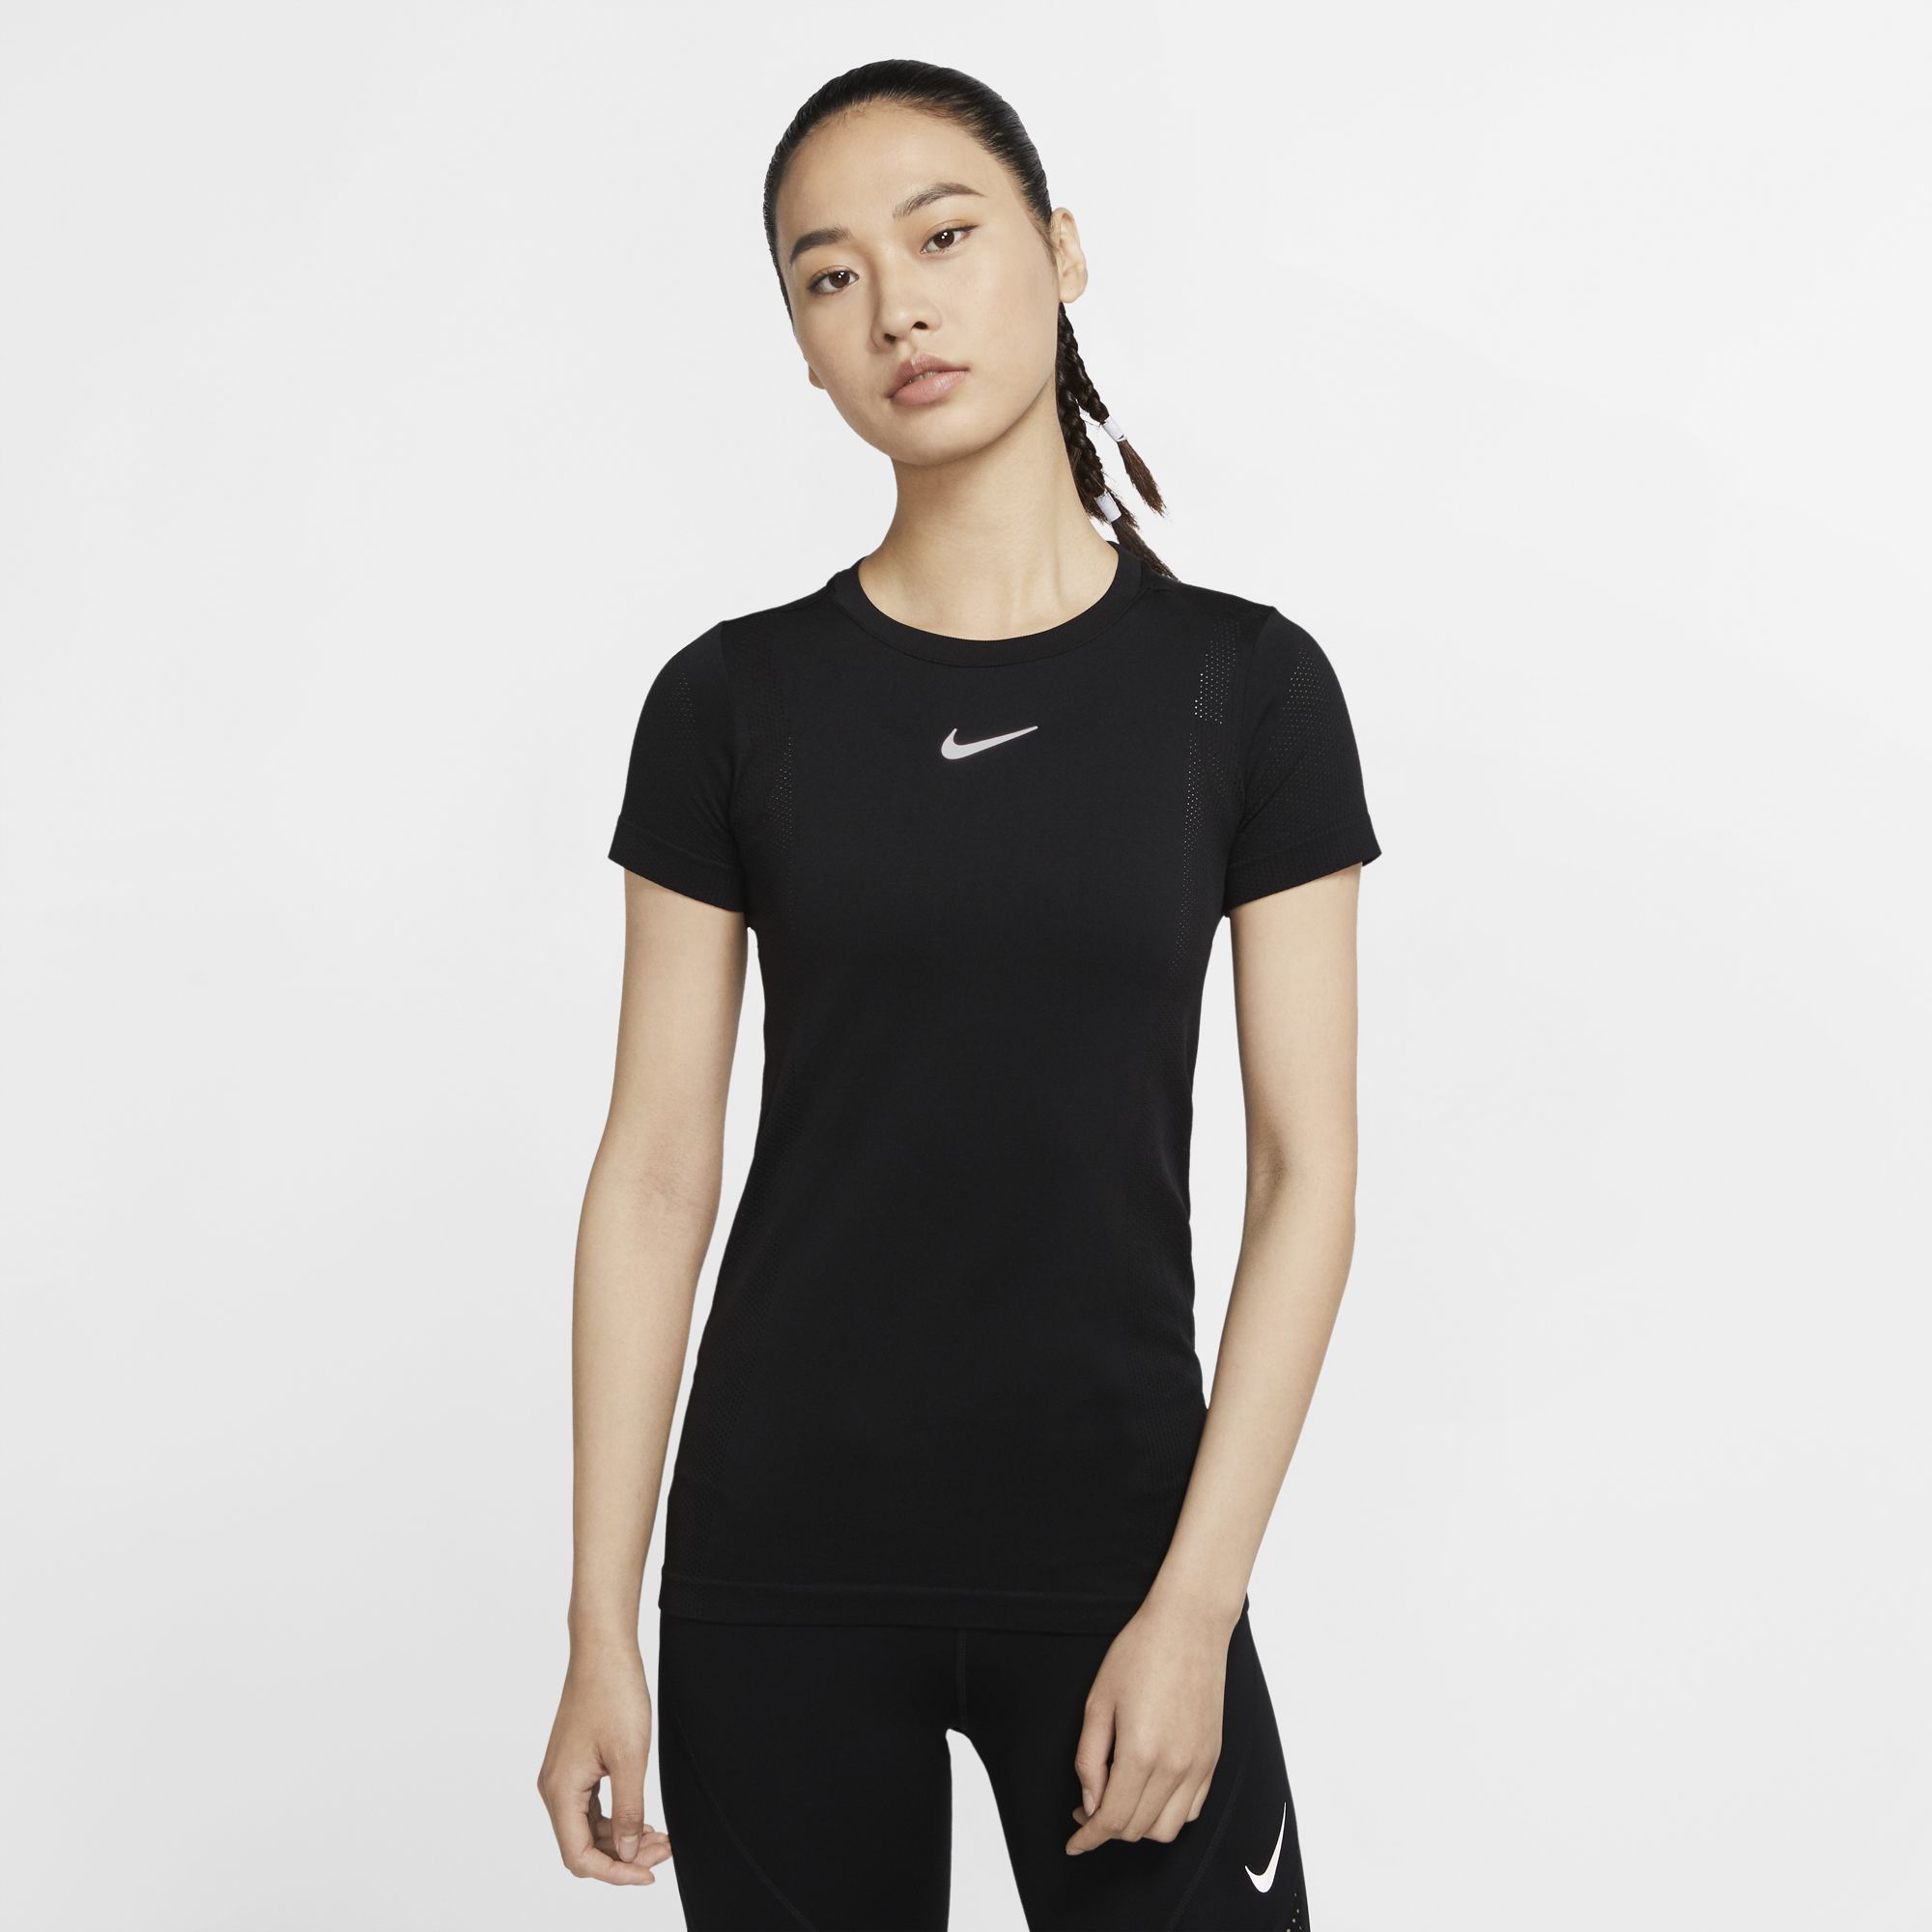 Womens Nike Infinite Top SS - The Running Company - Running Shoe ...